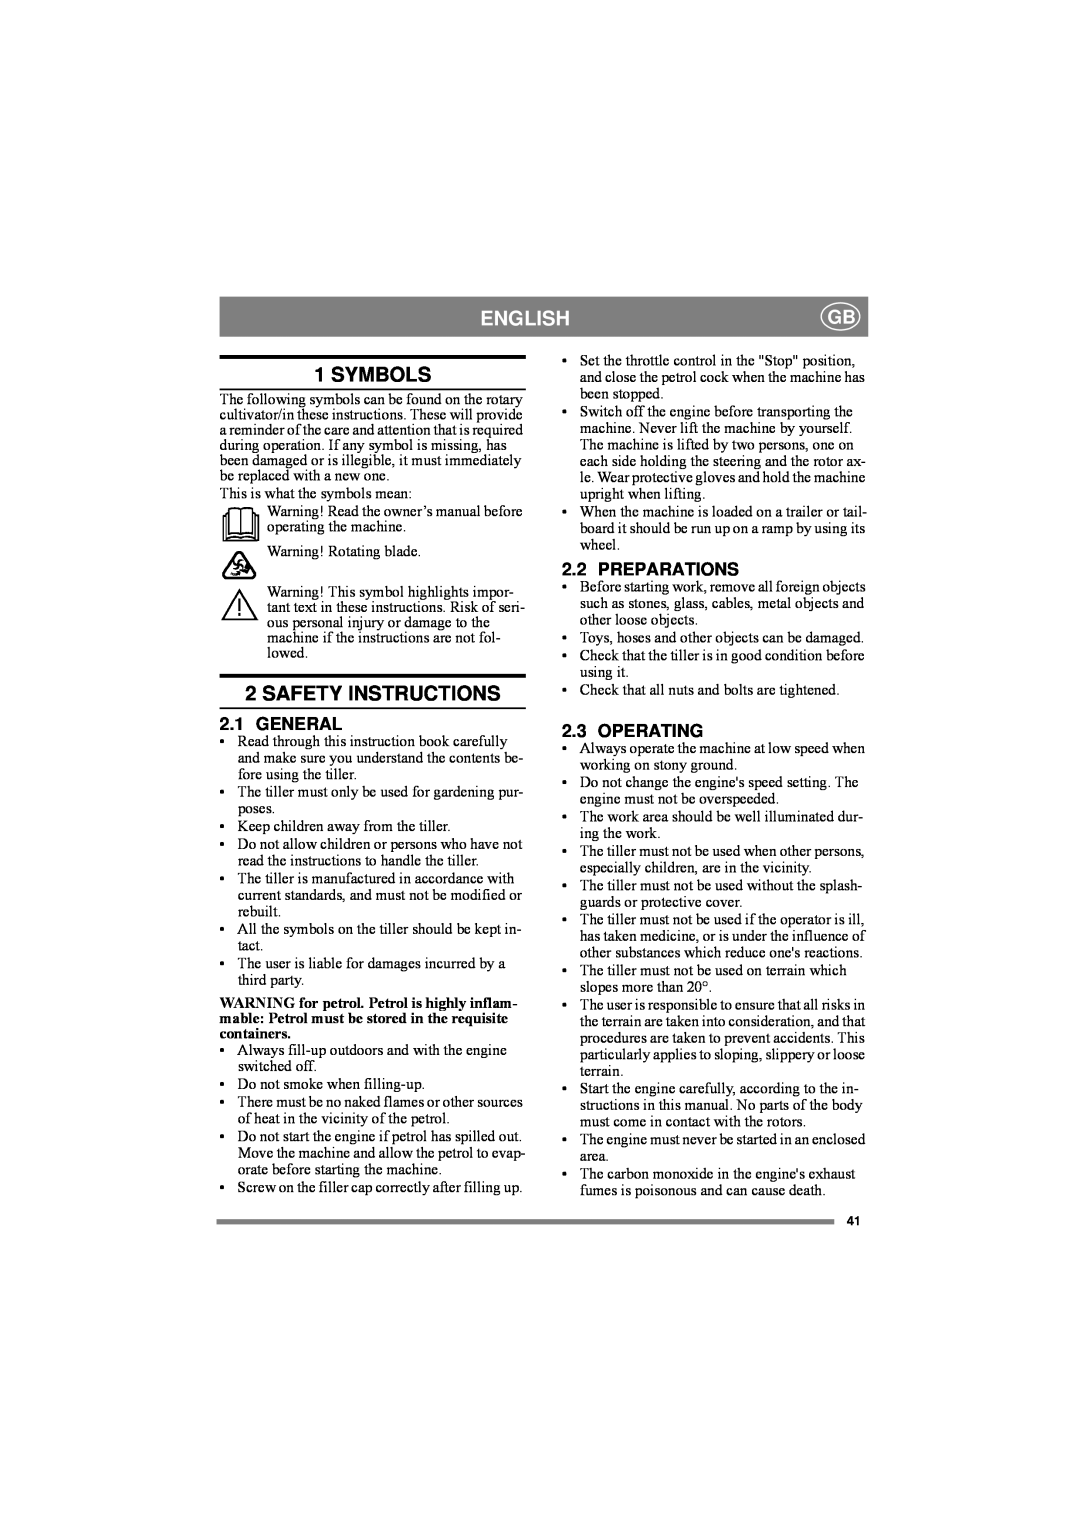 Stiga 75R-B, 75-G, 75R-HX manual English, Symbols, Safety Instructions 